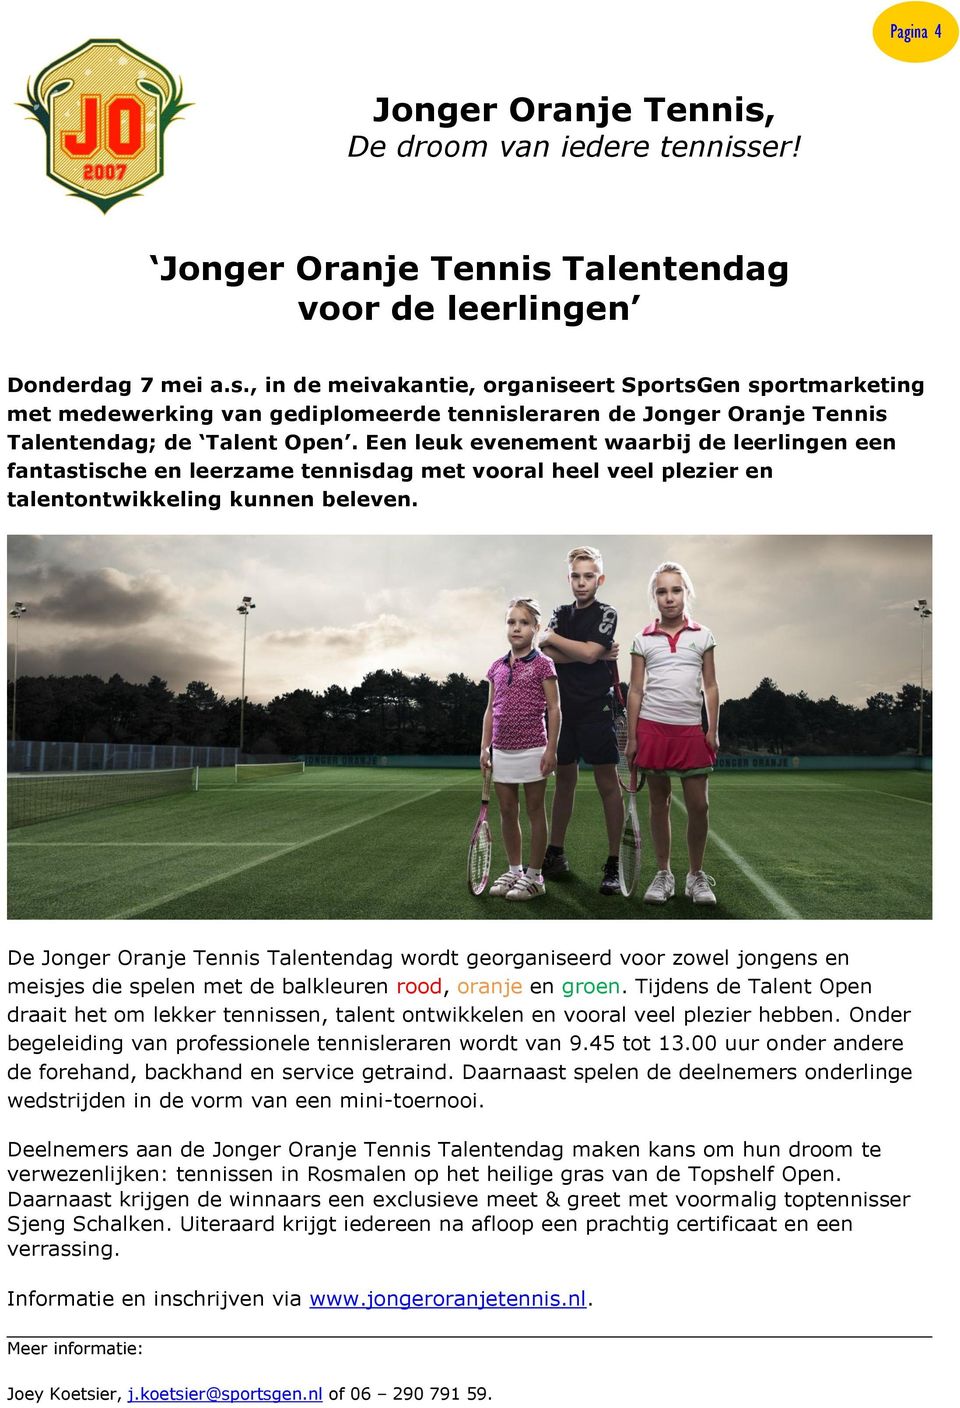 De Jonger Oranje Tennis Talentendag wordt georganiseerd voor zowel jongens en meisjes die spelen met de balkleuren rood, oranje en groen.